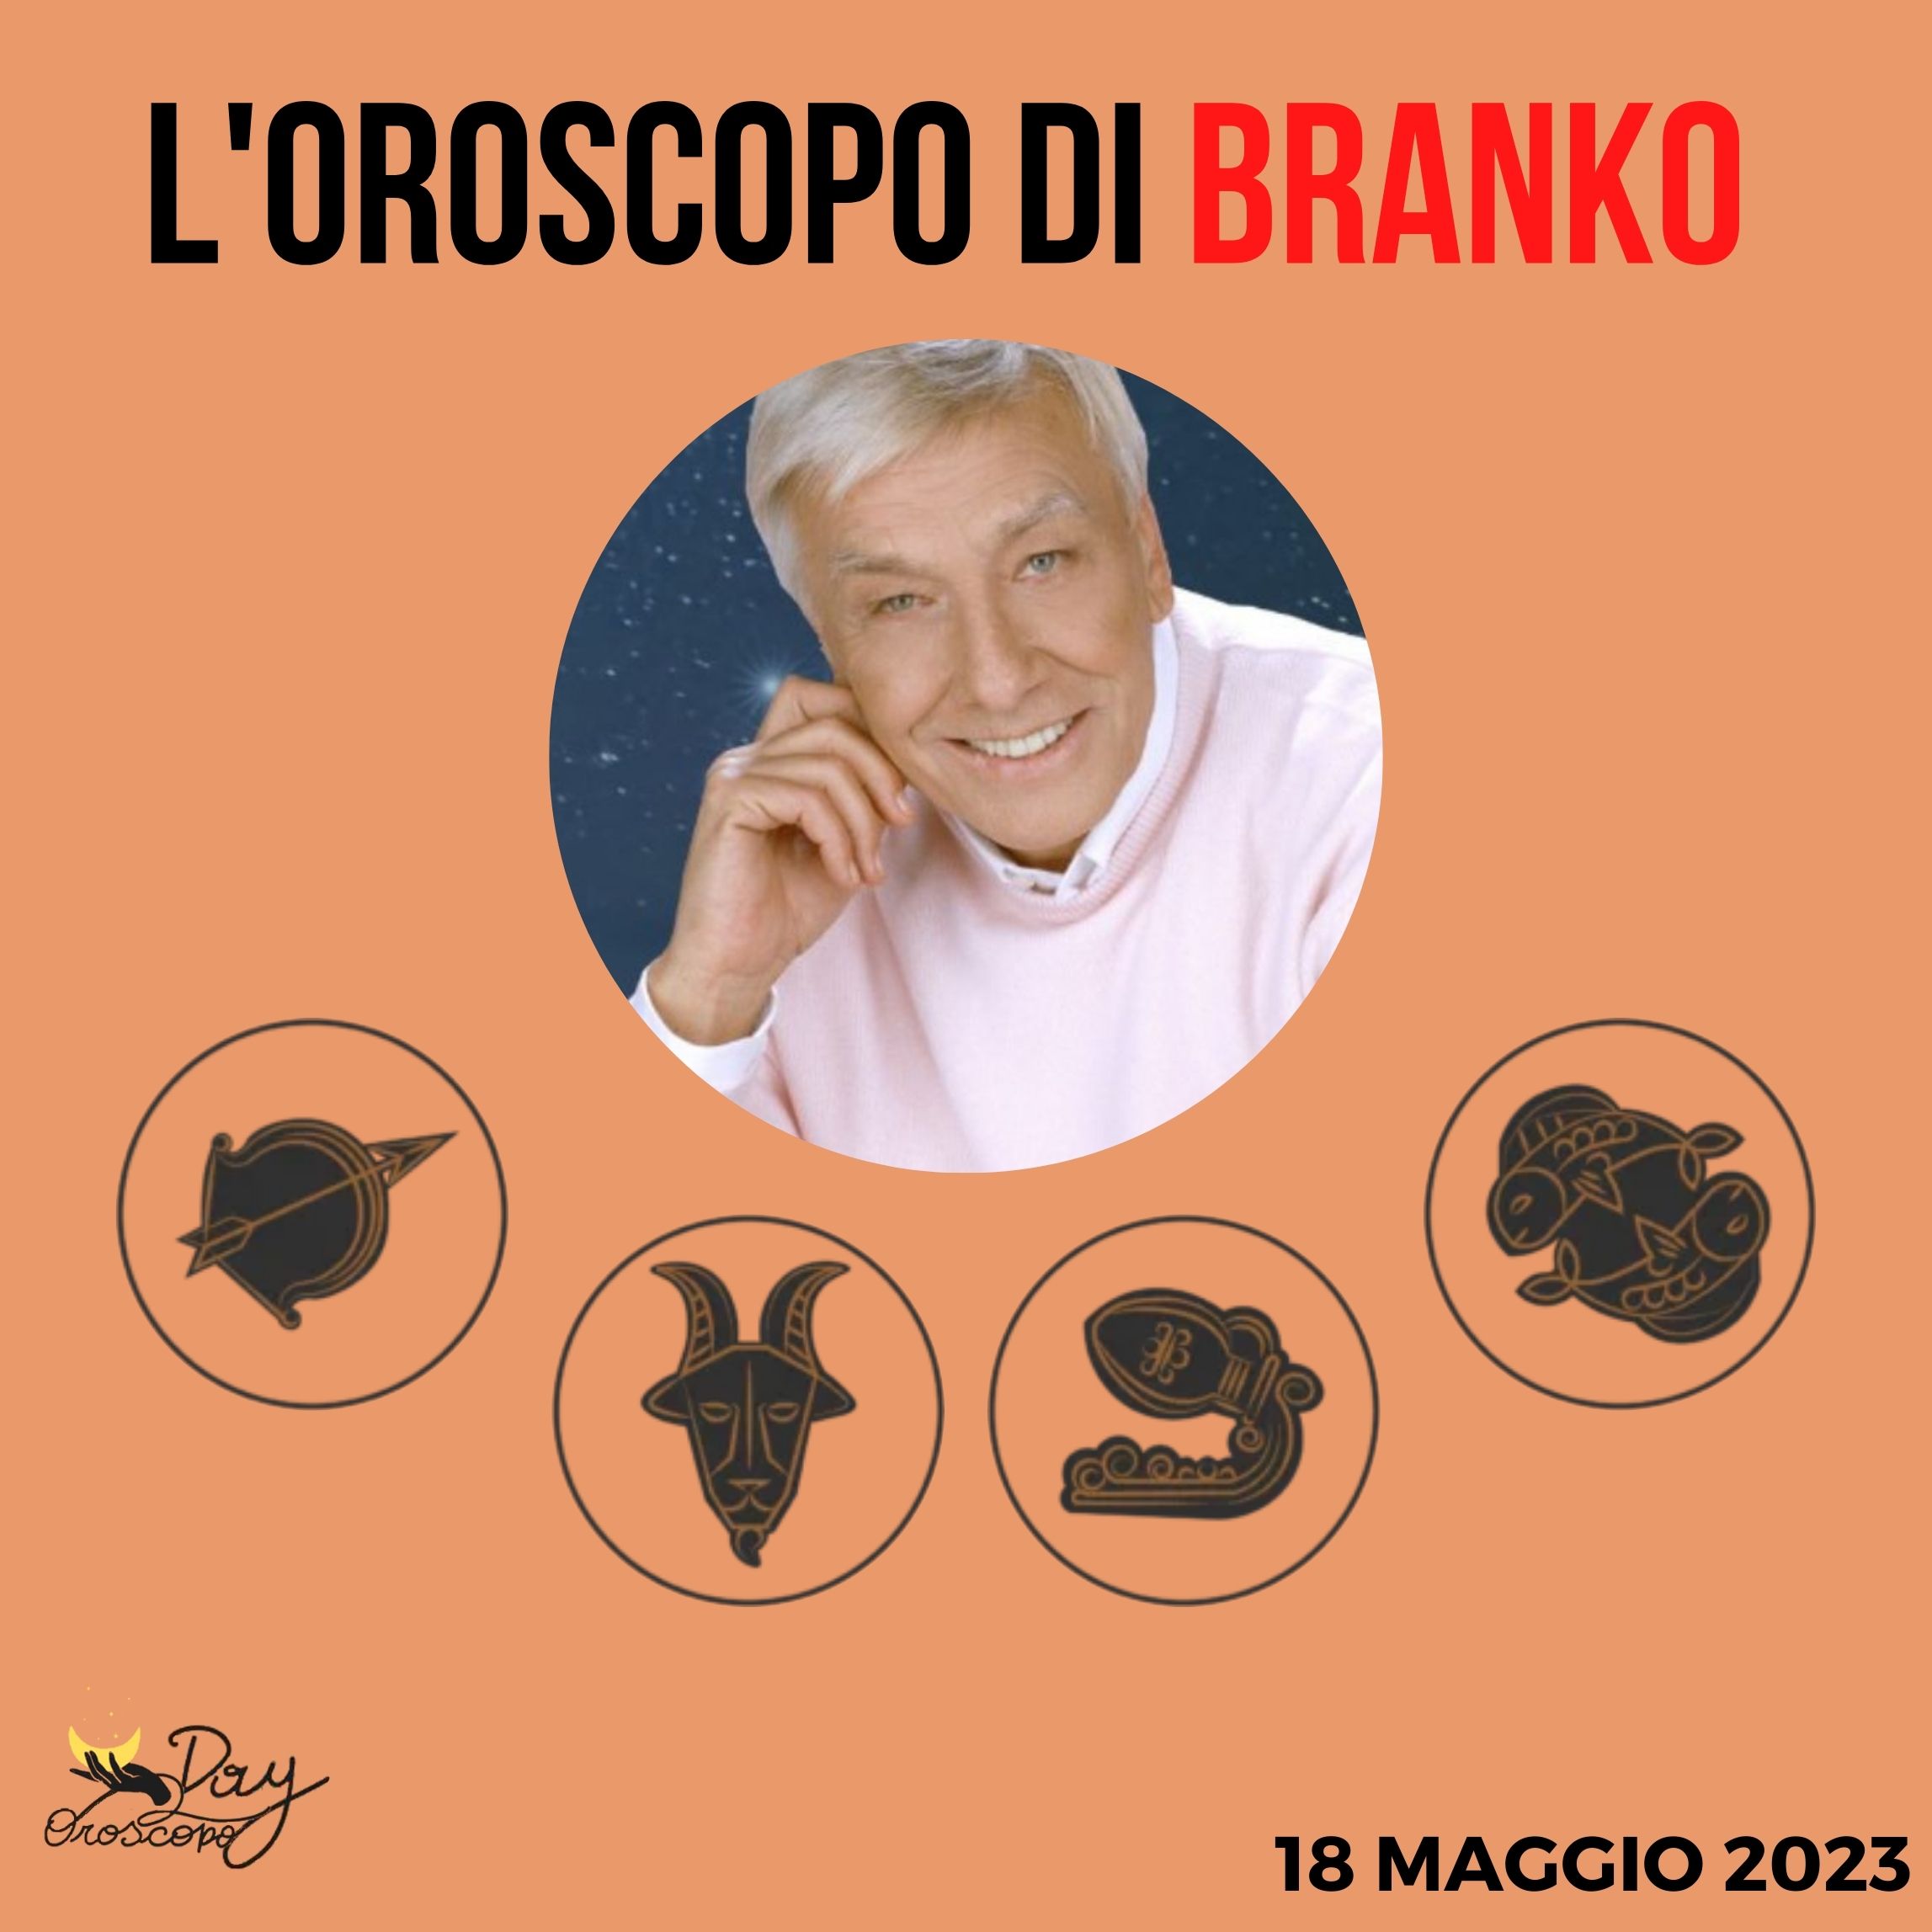 Oroscopo oggi domani Branko 18 maggio Sagittario Capricorno Acquario Pesci